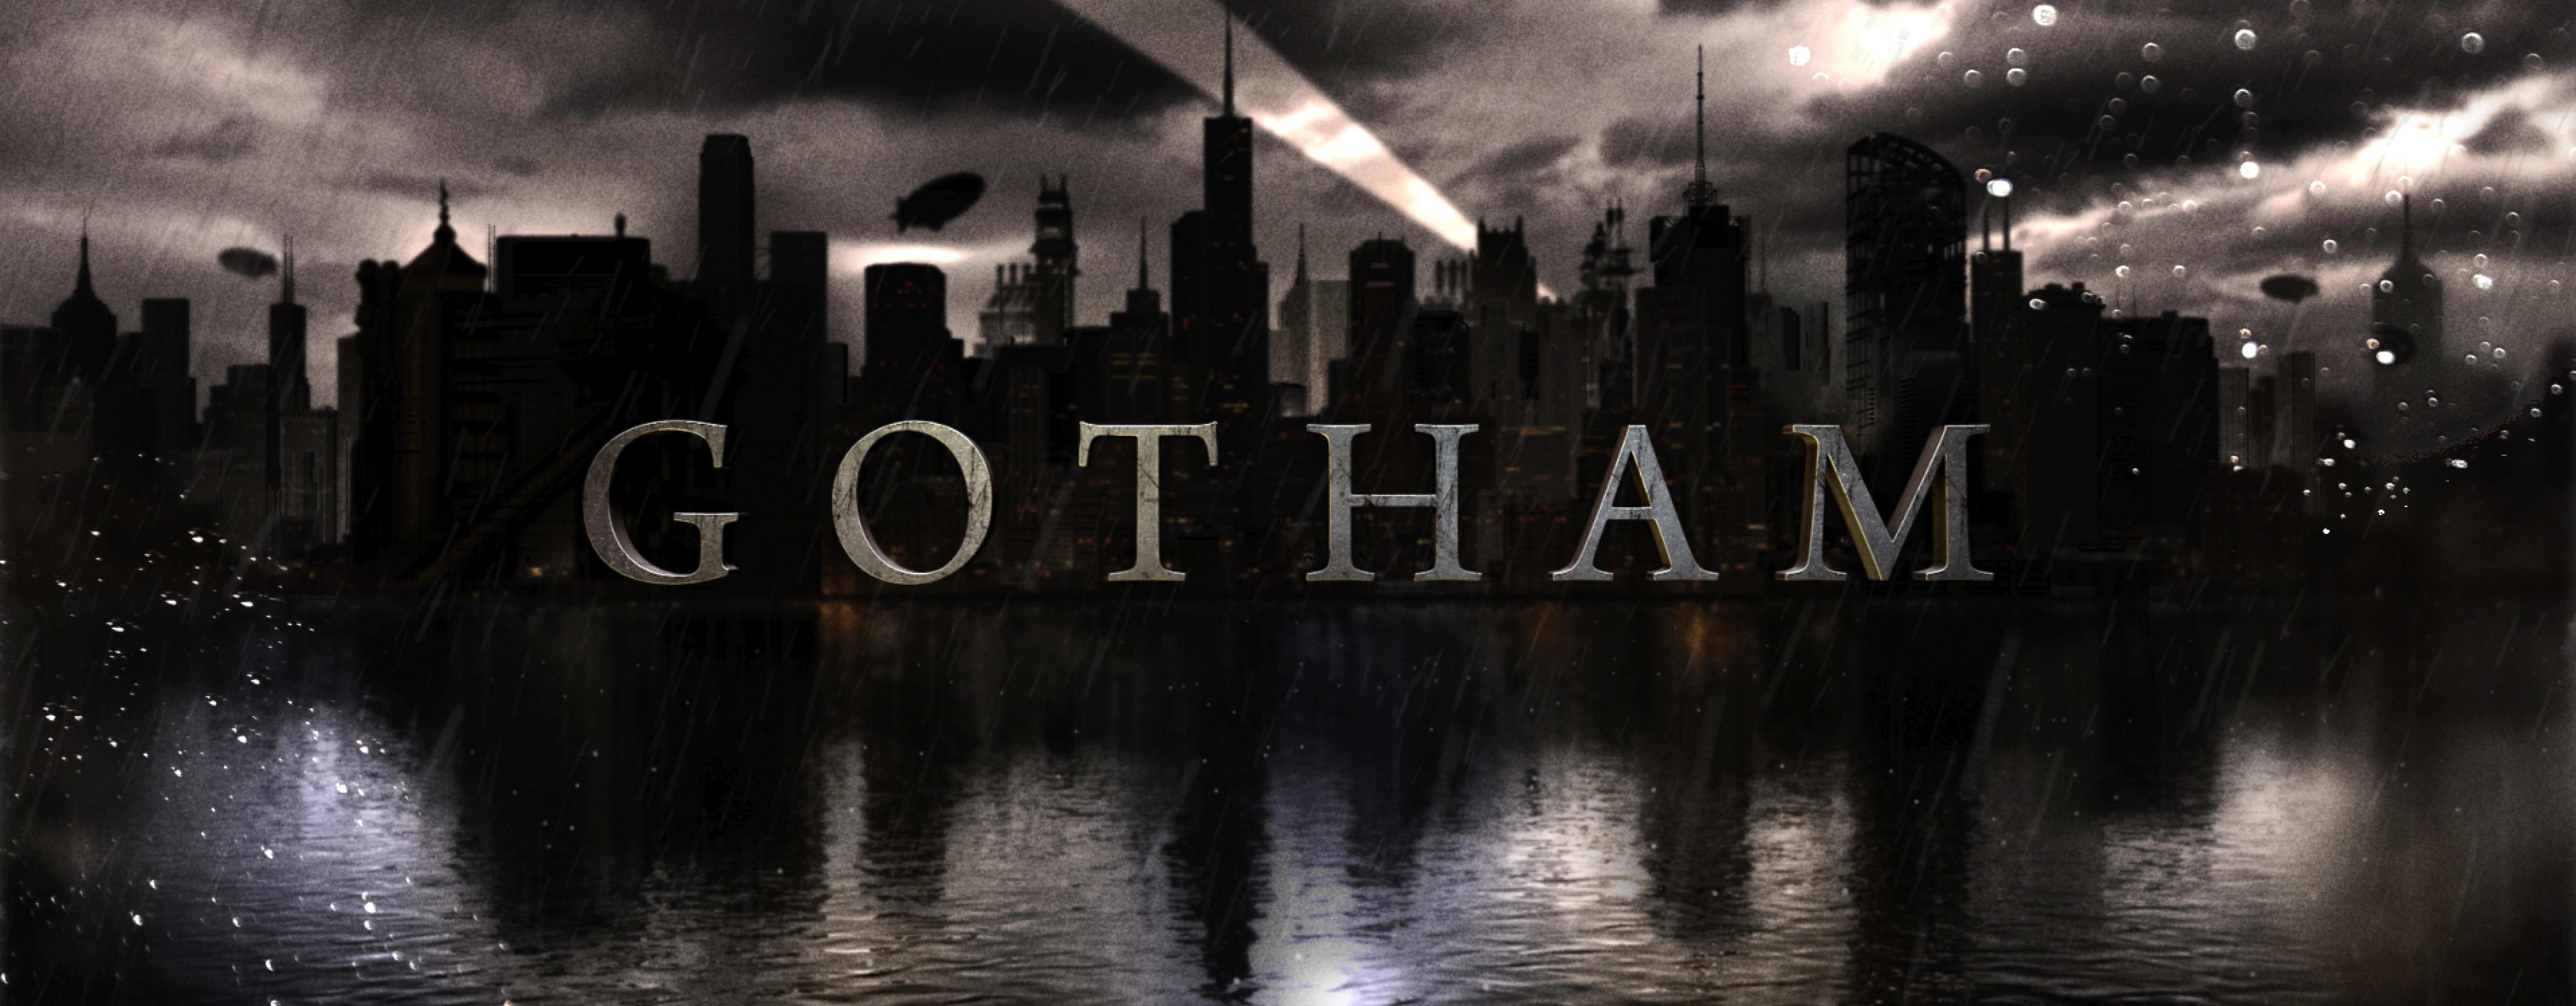 Gotham Backgrounds 4K Download